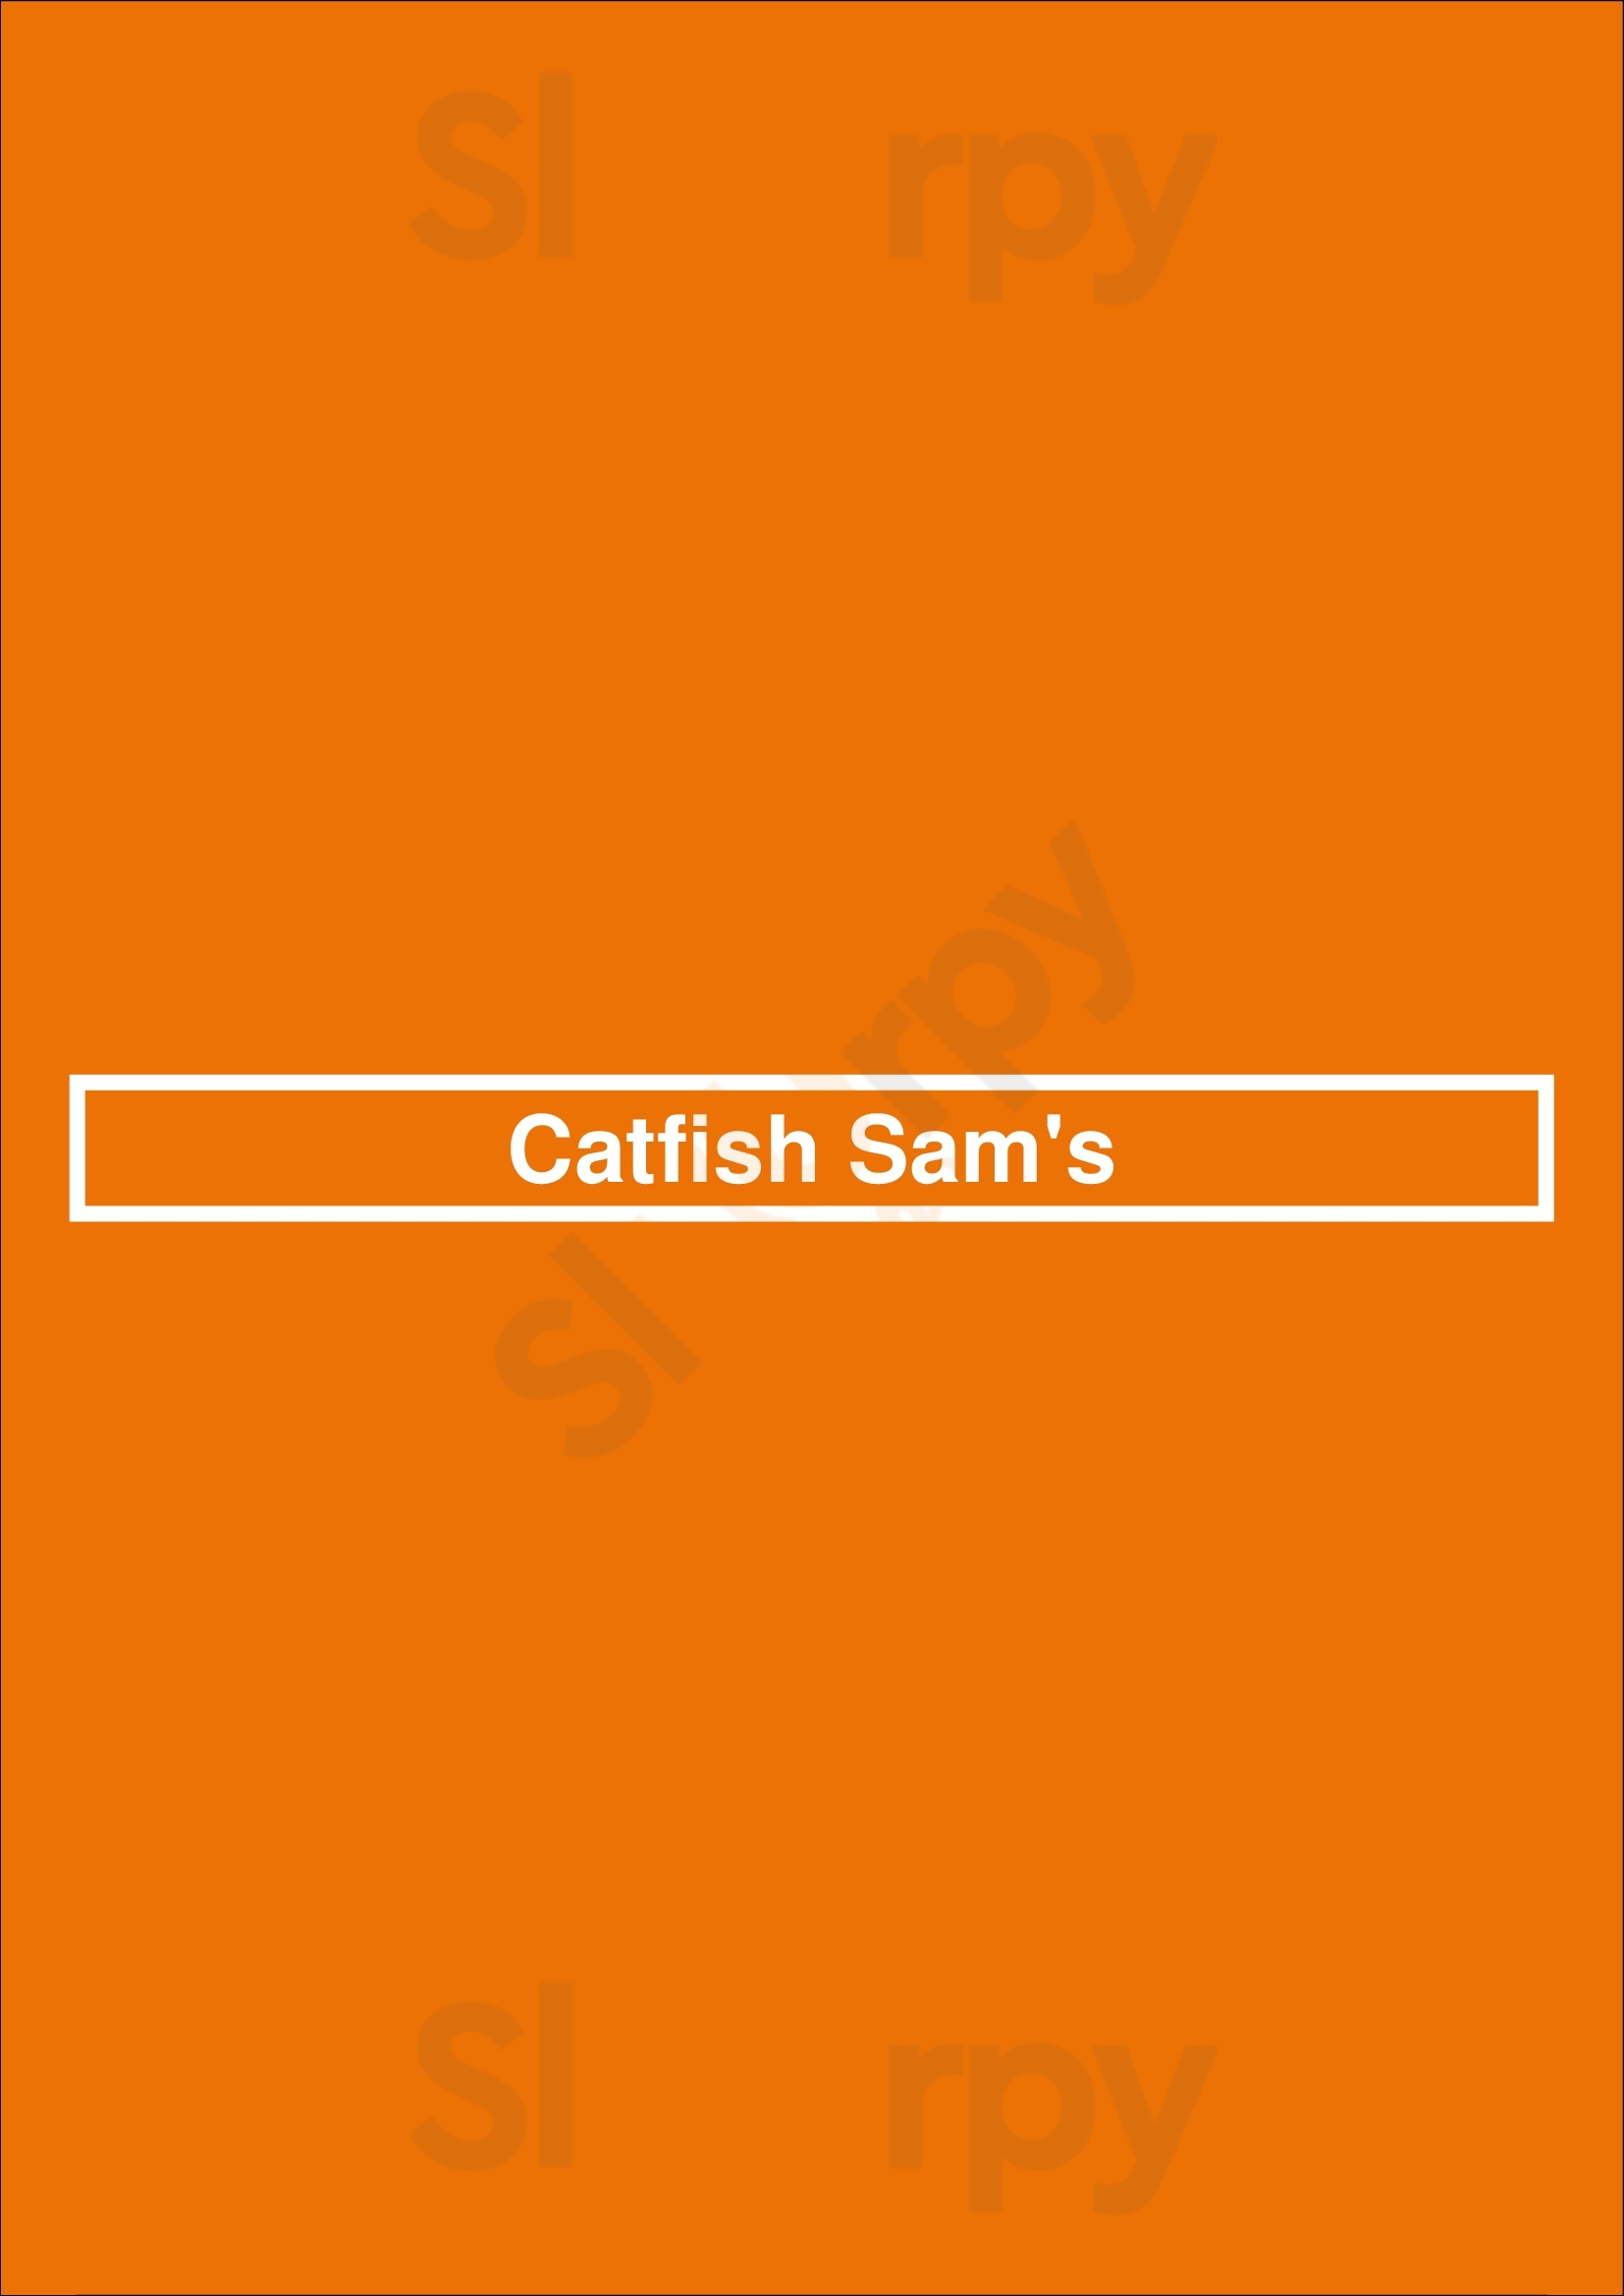 Catfish Sam's Arlington Menu - 1